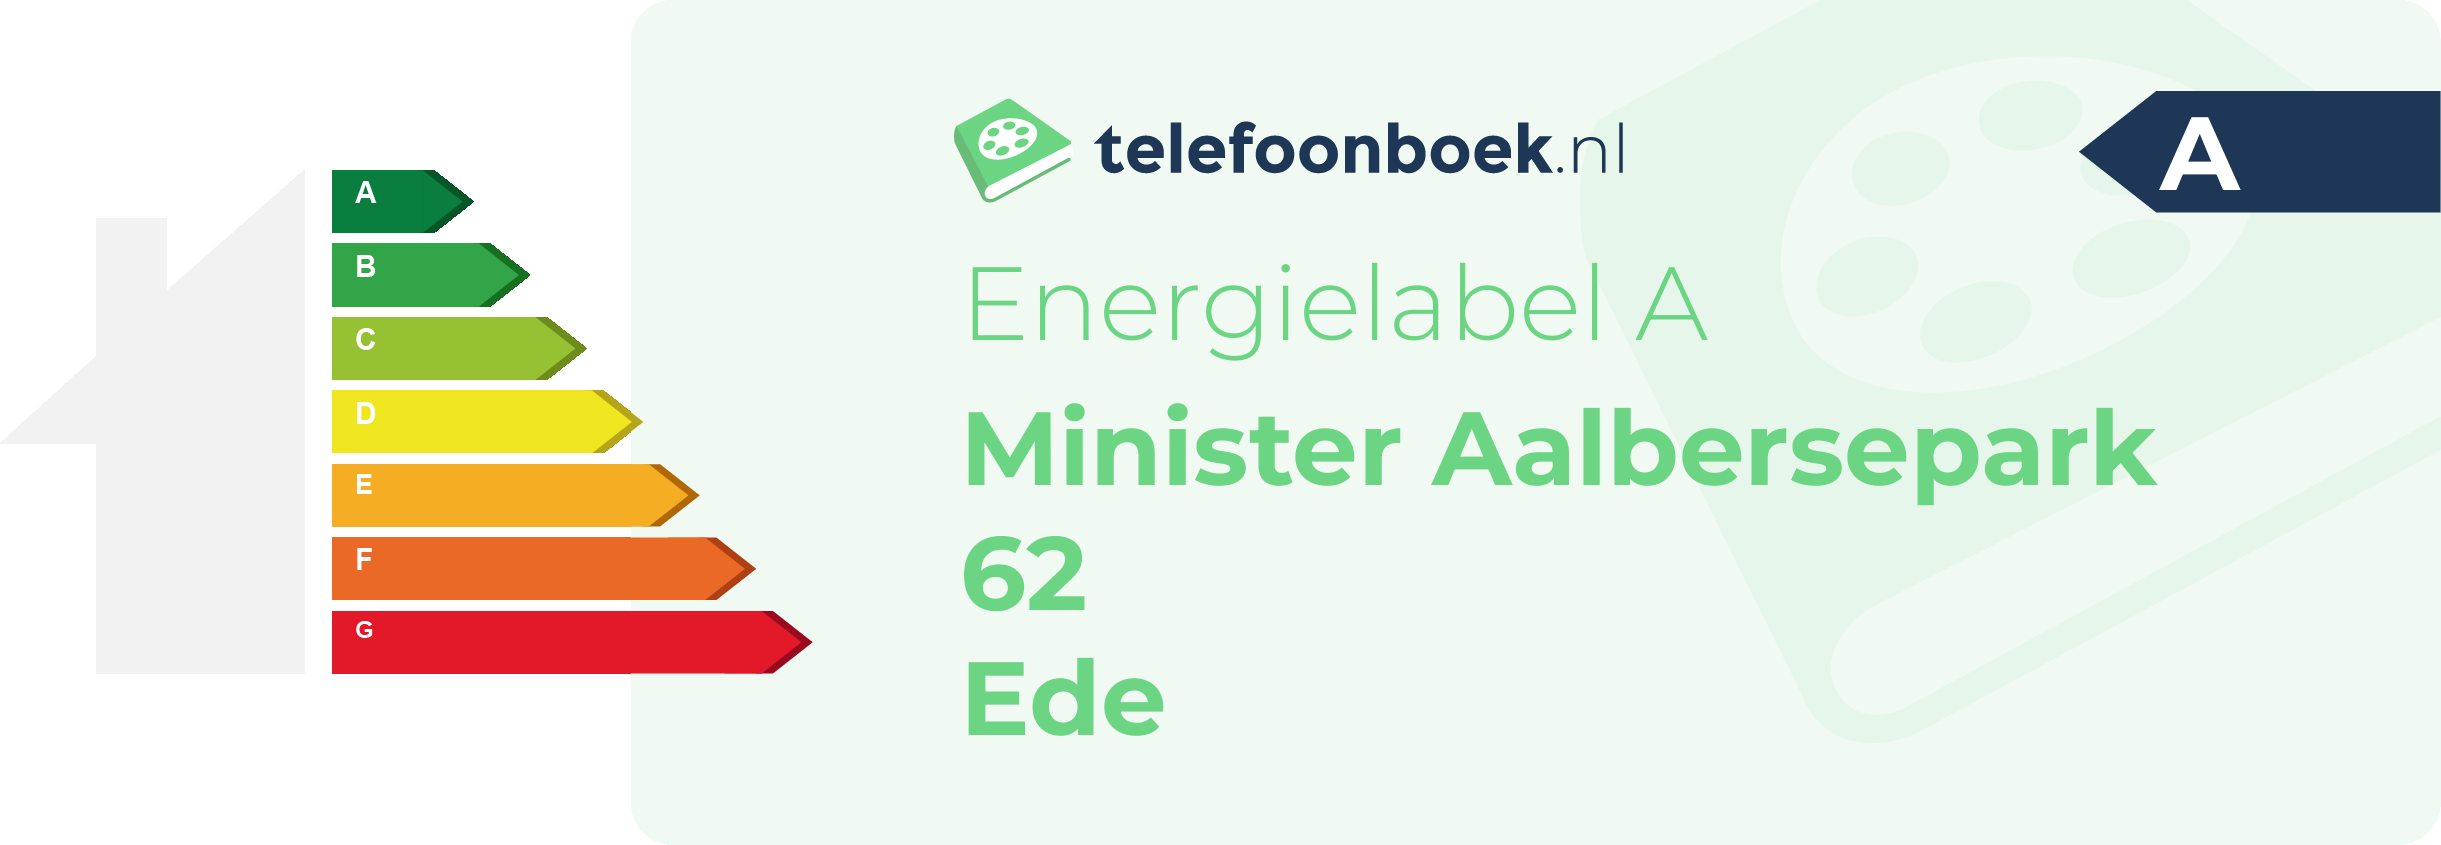 Energielabel Minister Aalbersepark 62 Ede